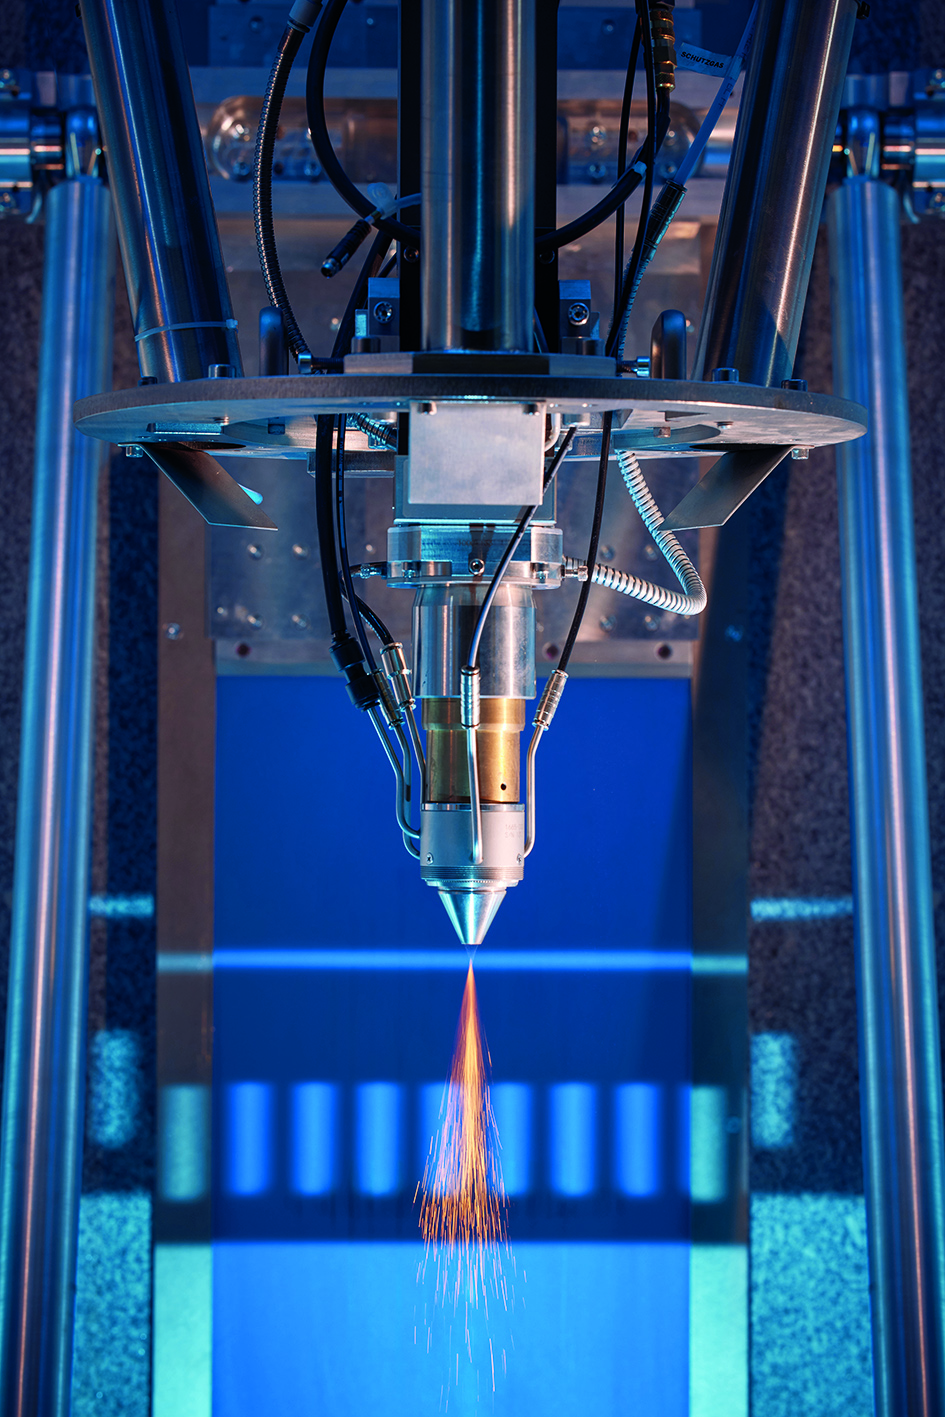 Forschende des Fraunhofer ILT fertigen Raumfahrtkomponenten additiv mit dem Laserauftragschweißen. Eine flexible und schnelle Alternative zur herkömmlichen Herstellung mit Umformen, Schweißen und mechanischer Bearbeitung.